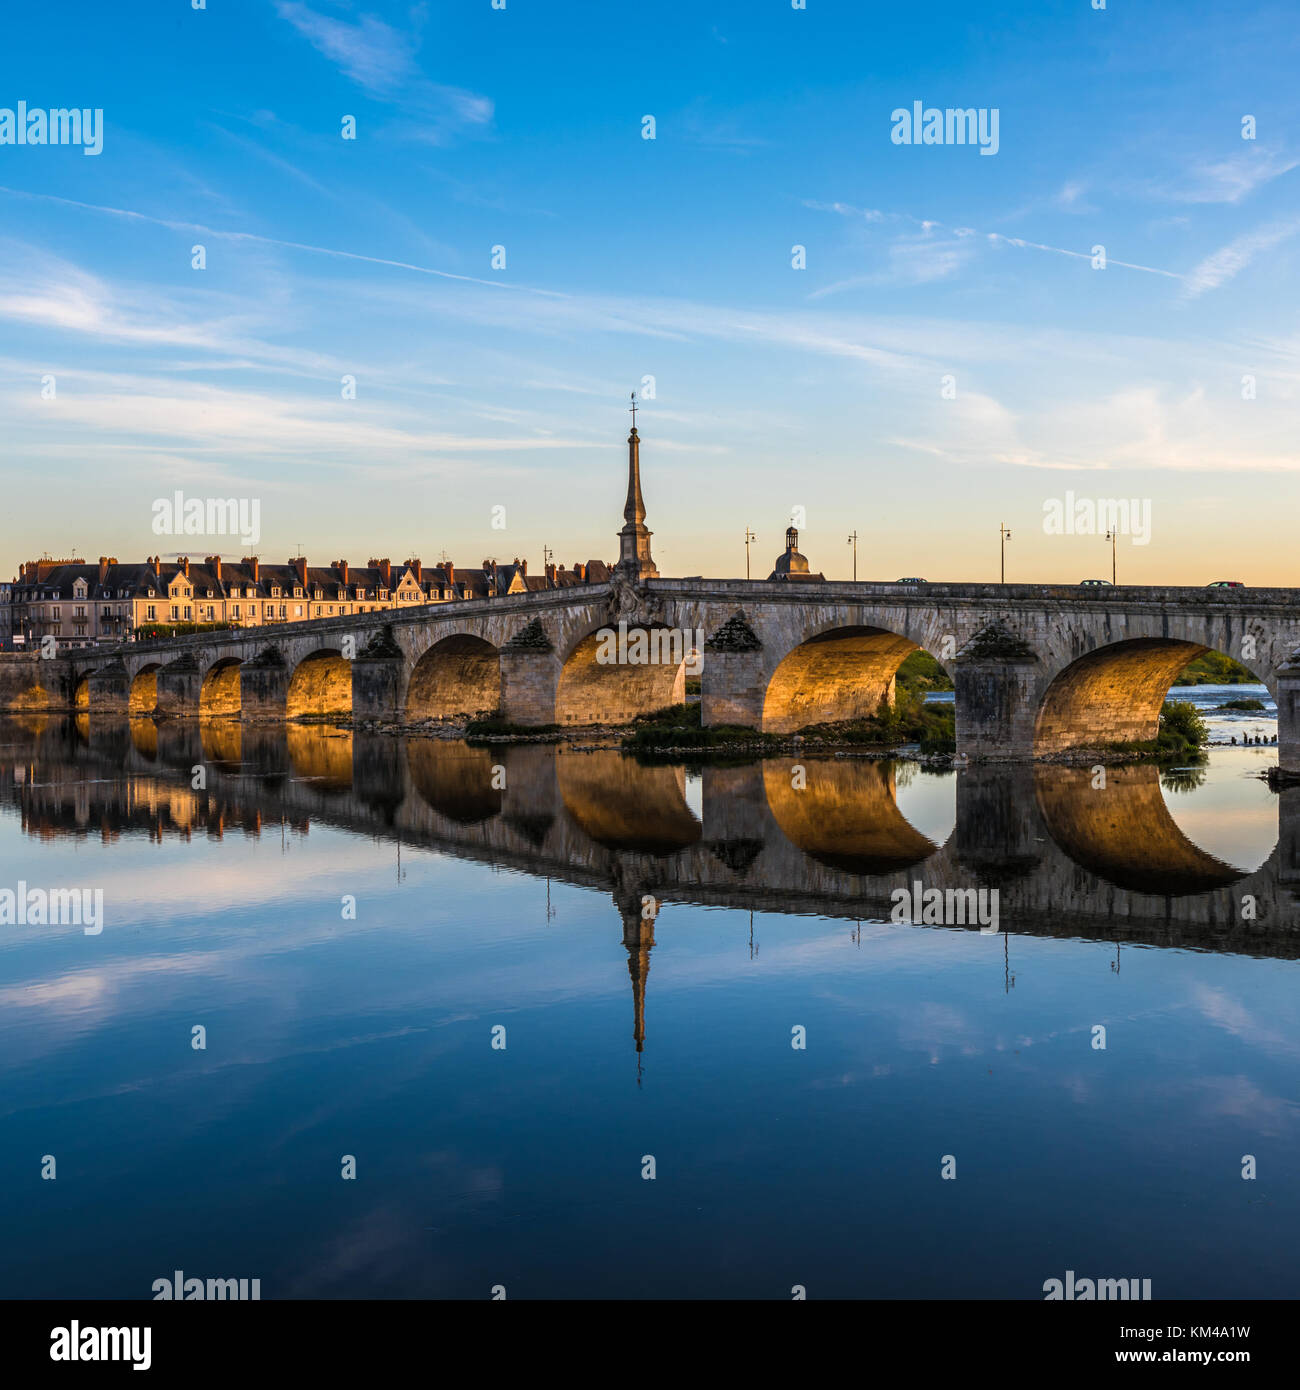 Jacques-Gabriel Bridge over the Loire River in Blois, France Stock Photo